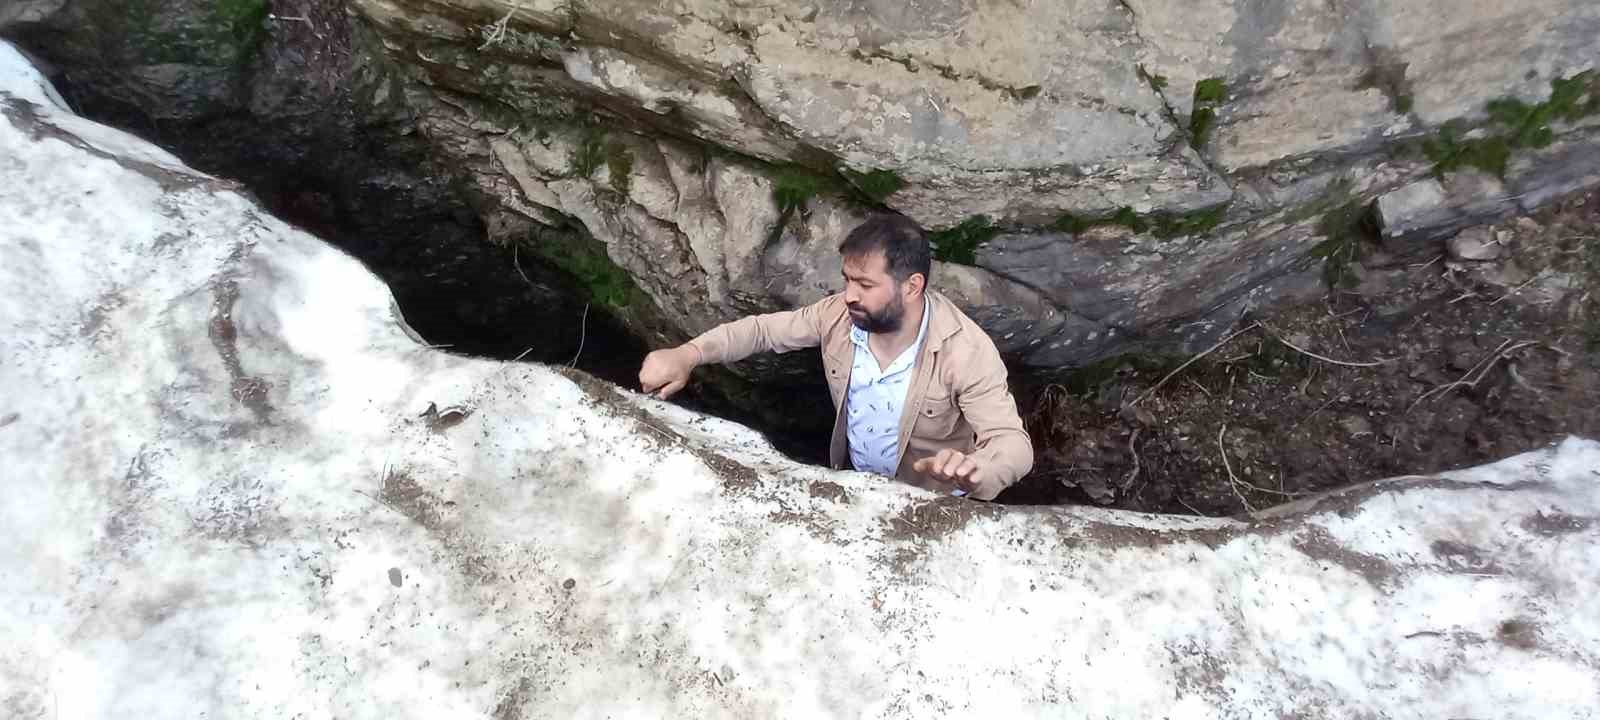 Bitlis’in kar tünelleri buzdan mağaraları andırıyor
